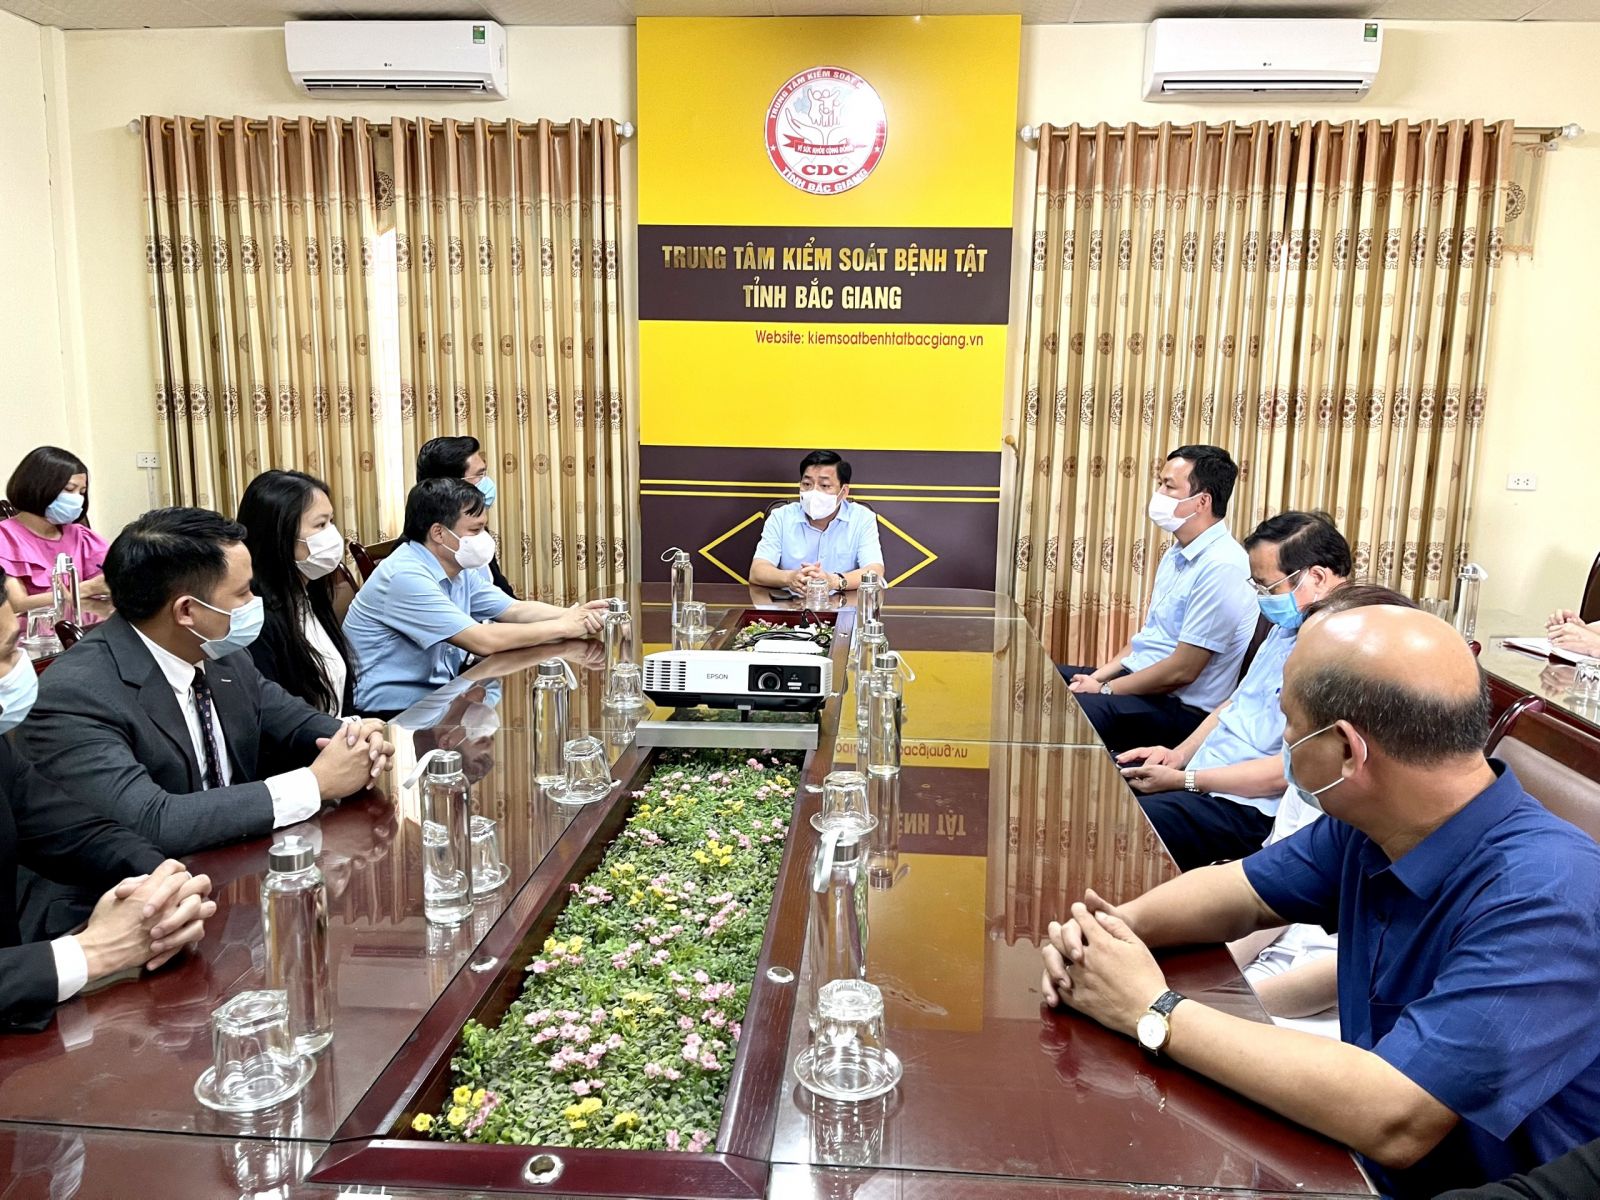 Ông Dương Văn Thái - Bí thư Tỉnh ủy Bắc Giang thăm Trung tâm kiểm soát dịch bệnh Bắc Giang và chỉ đạo công tác phòng chống dịch trên địa bàn tỉnh